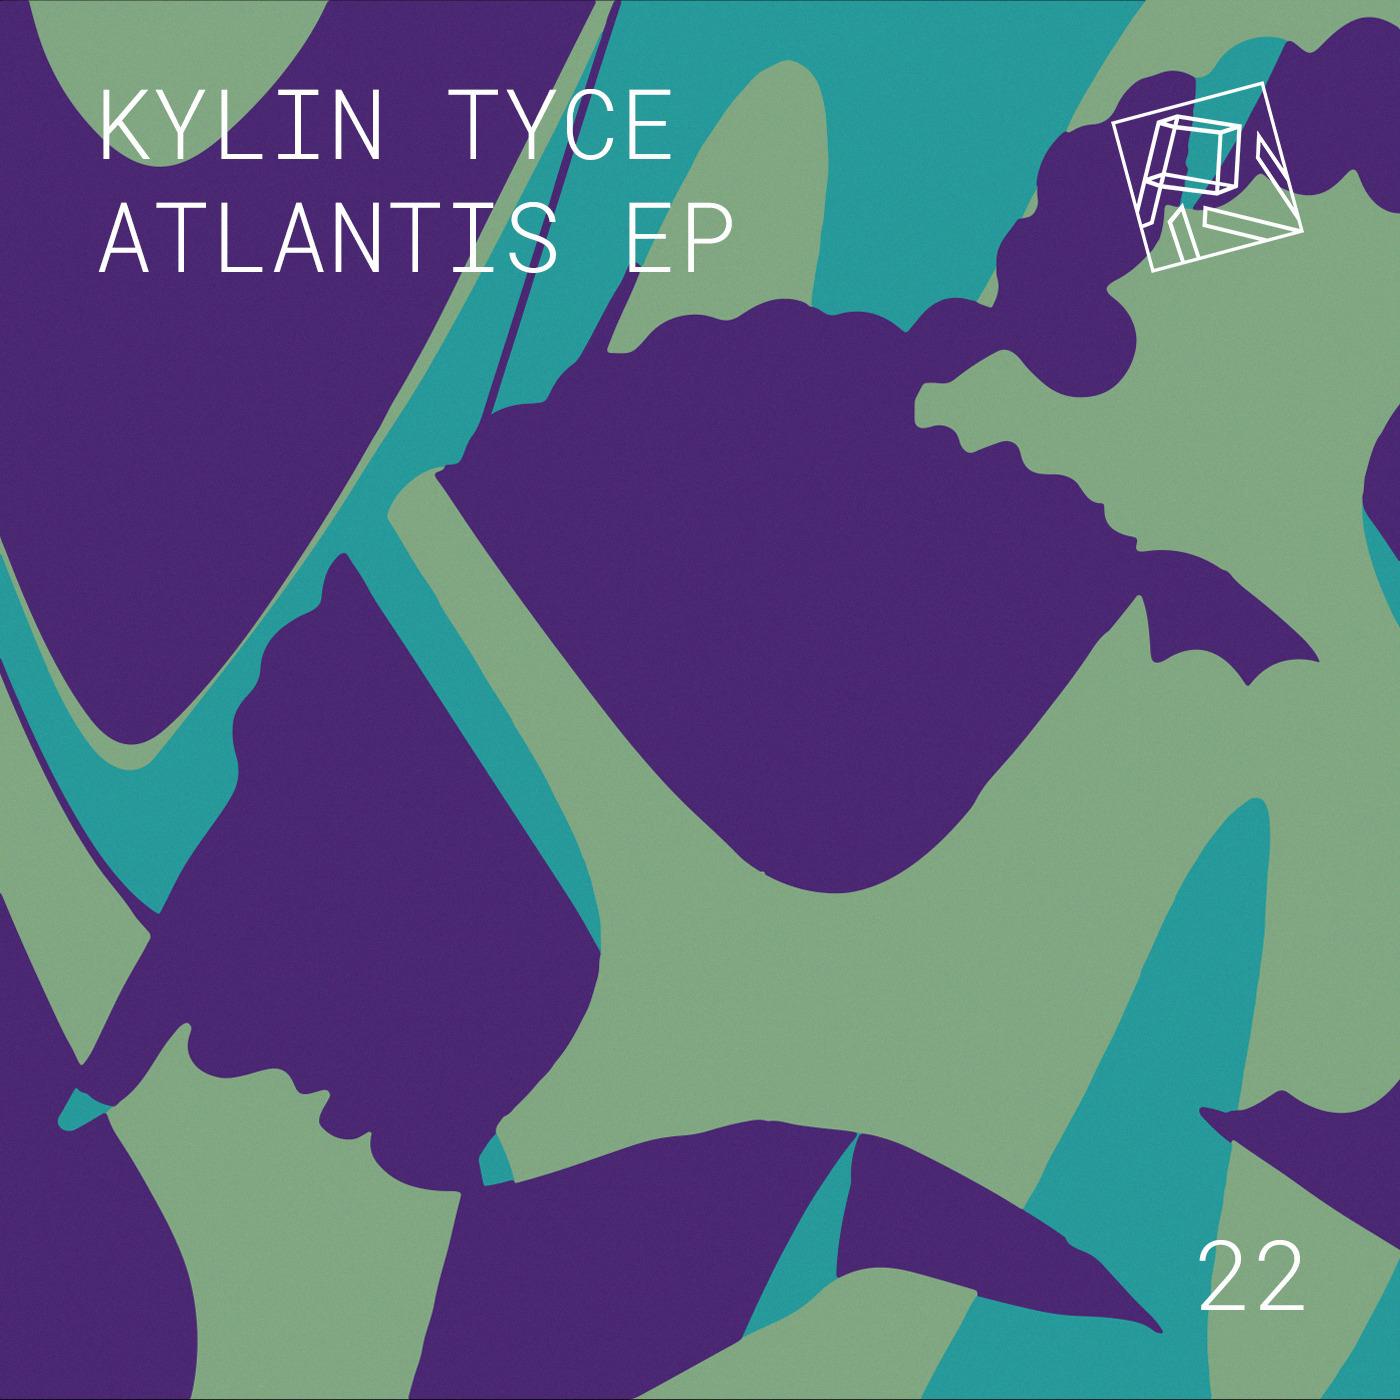 Kylin Tyce - Reaction